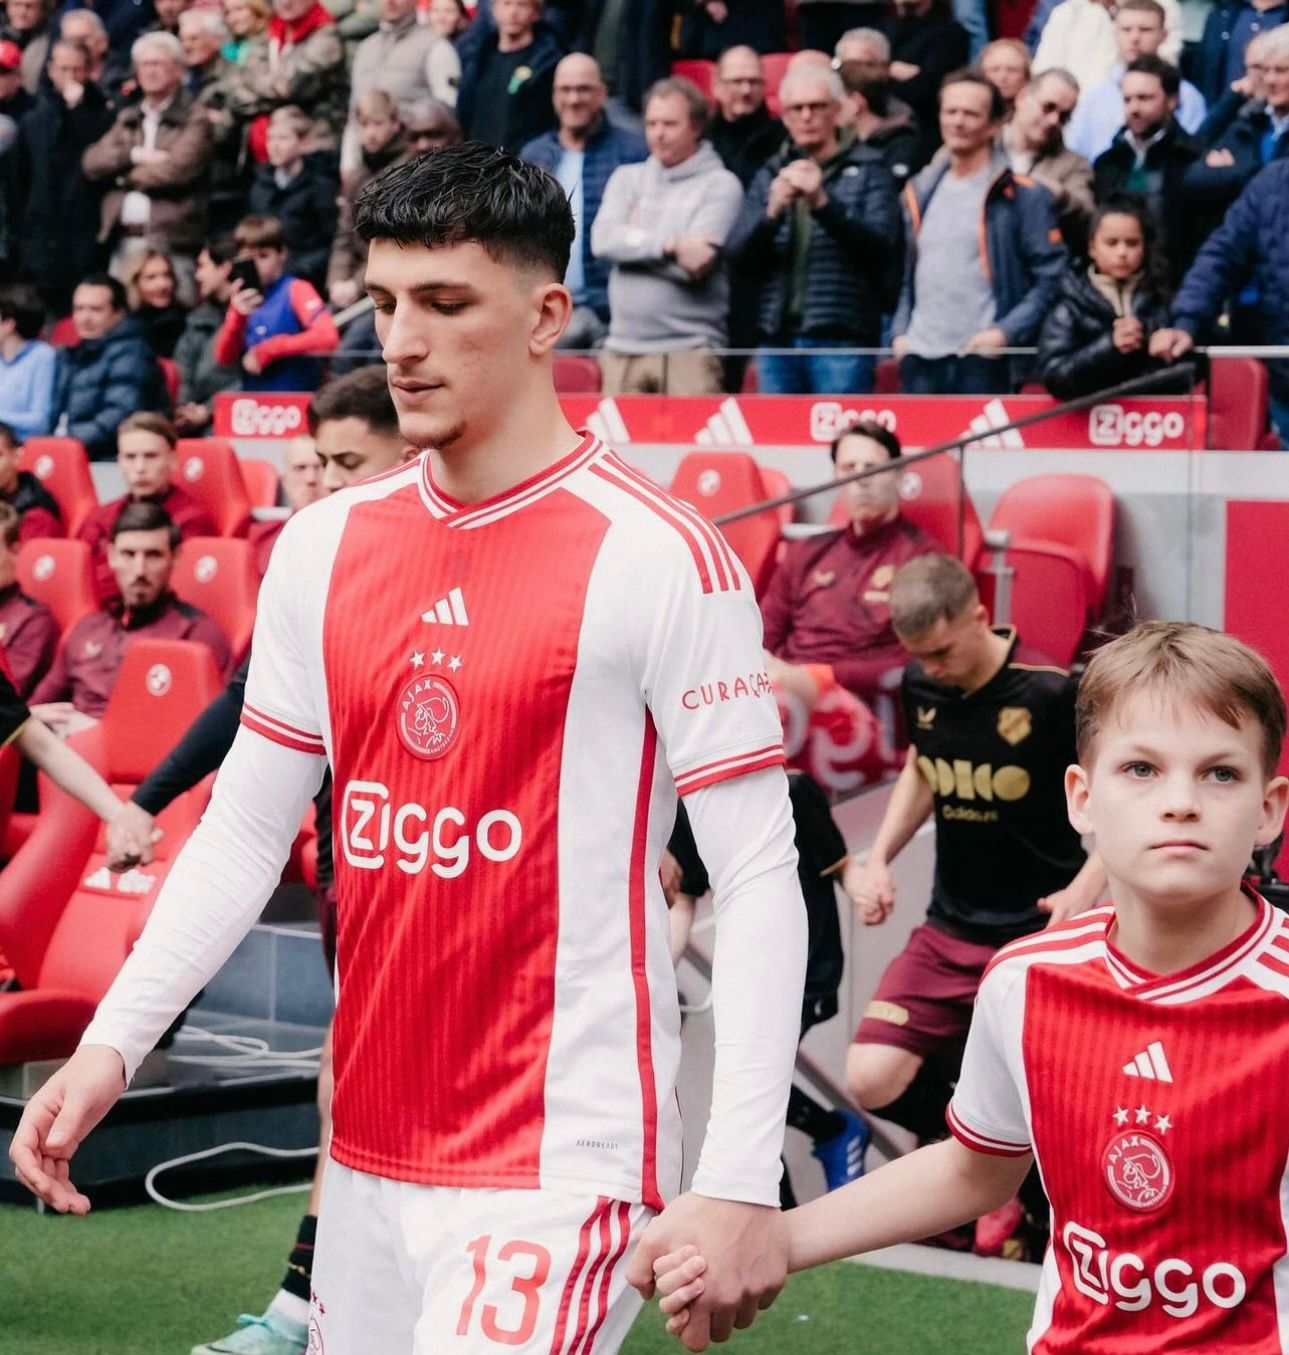  Hollanda’da Forma Giyen Milli Futbolcunun Babası Yine Boztepe Muhtarı Oldu